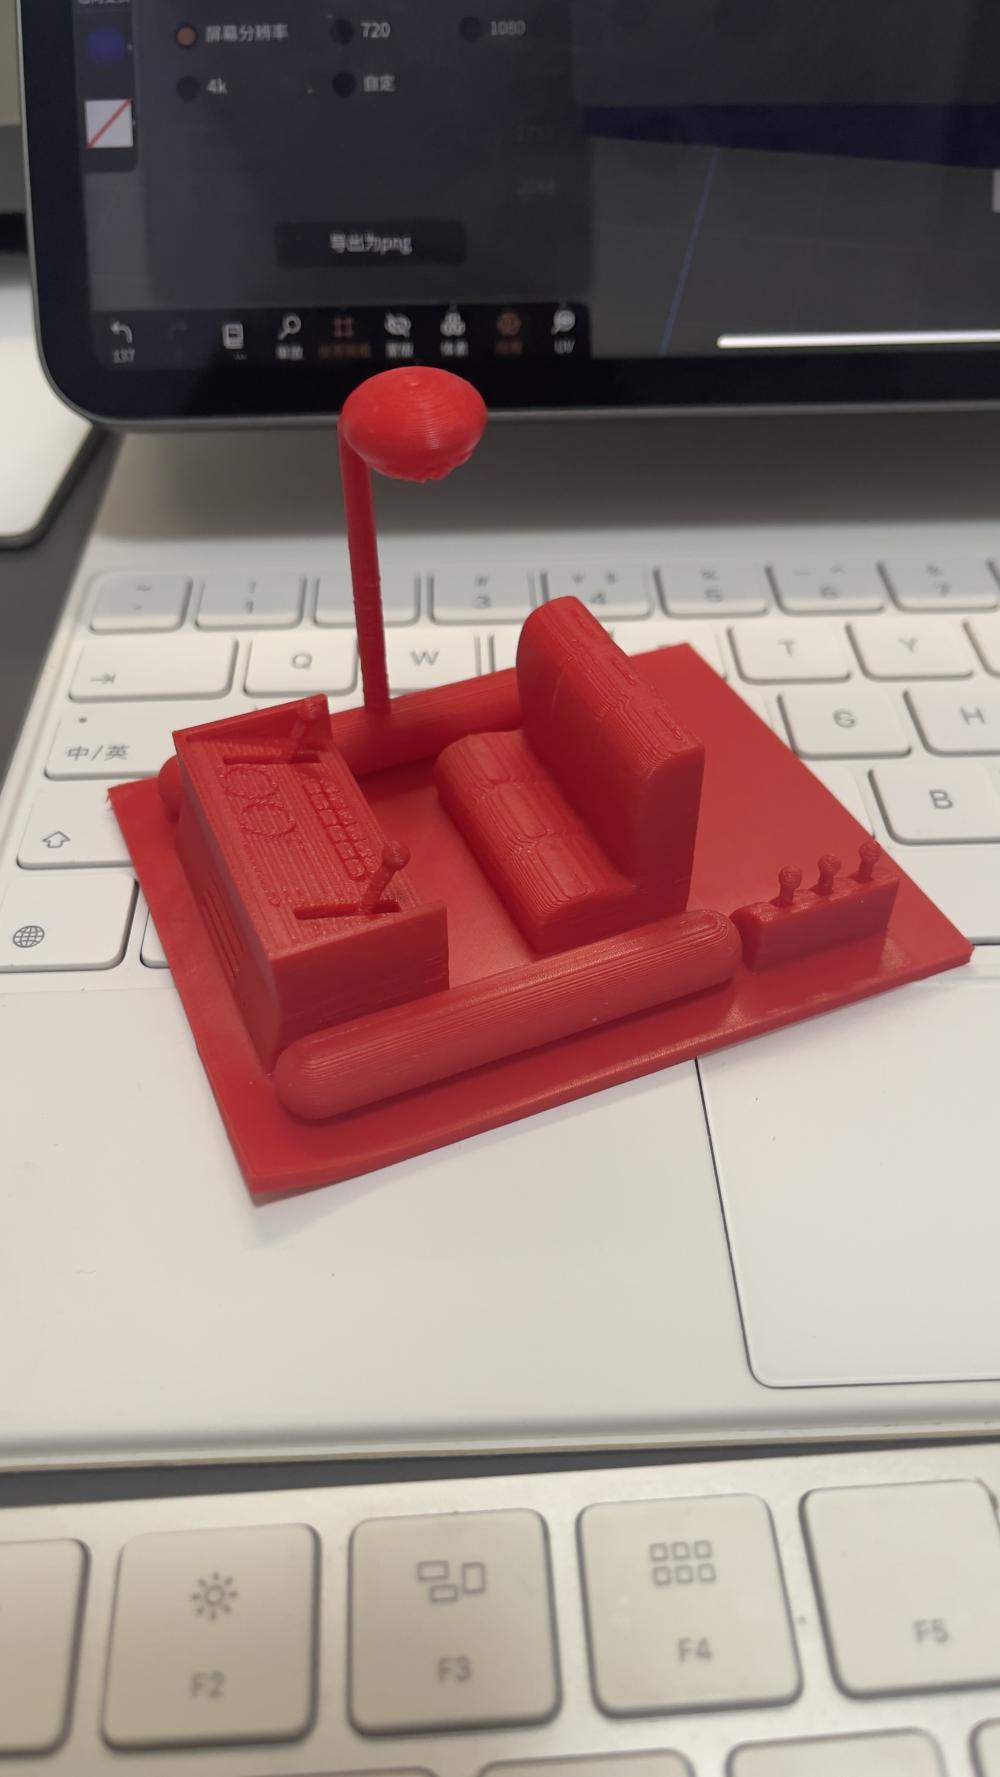 哆啦a梦的时光机3D打印模型